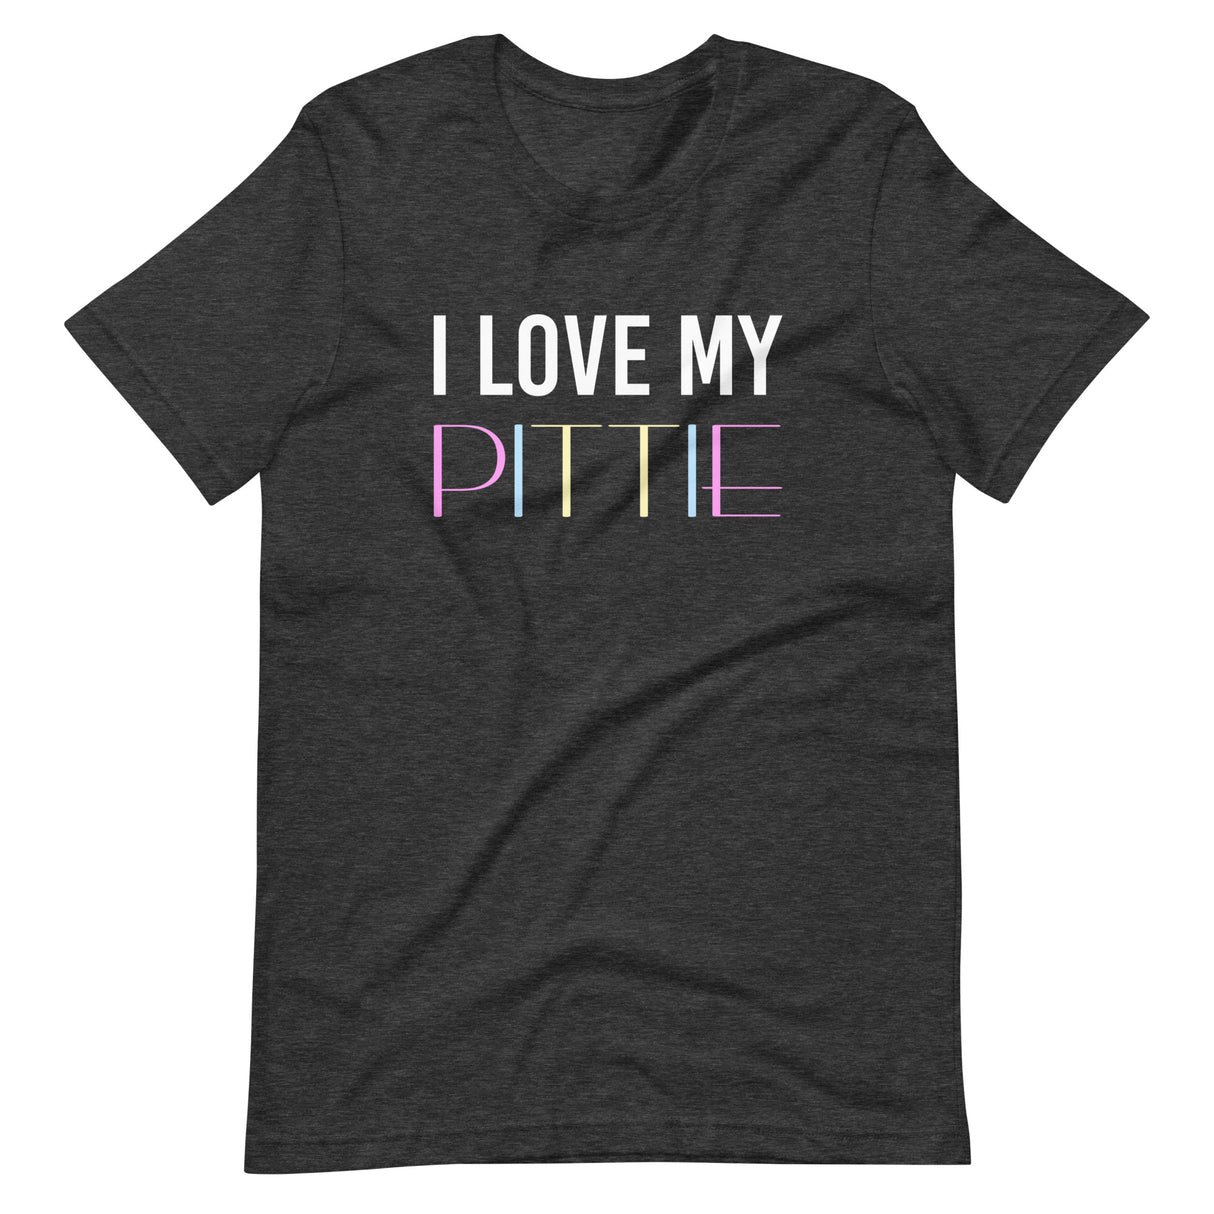 I Love My Pittie Shirt